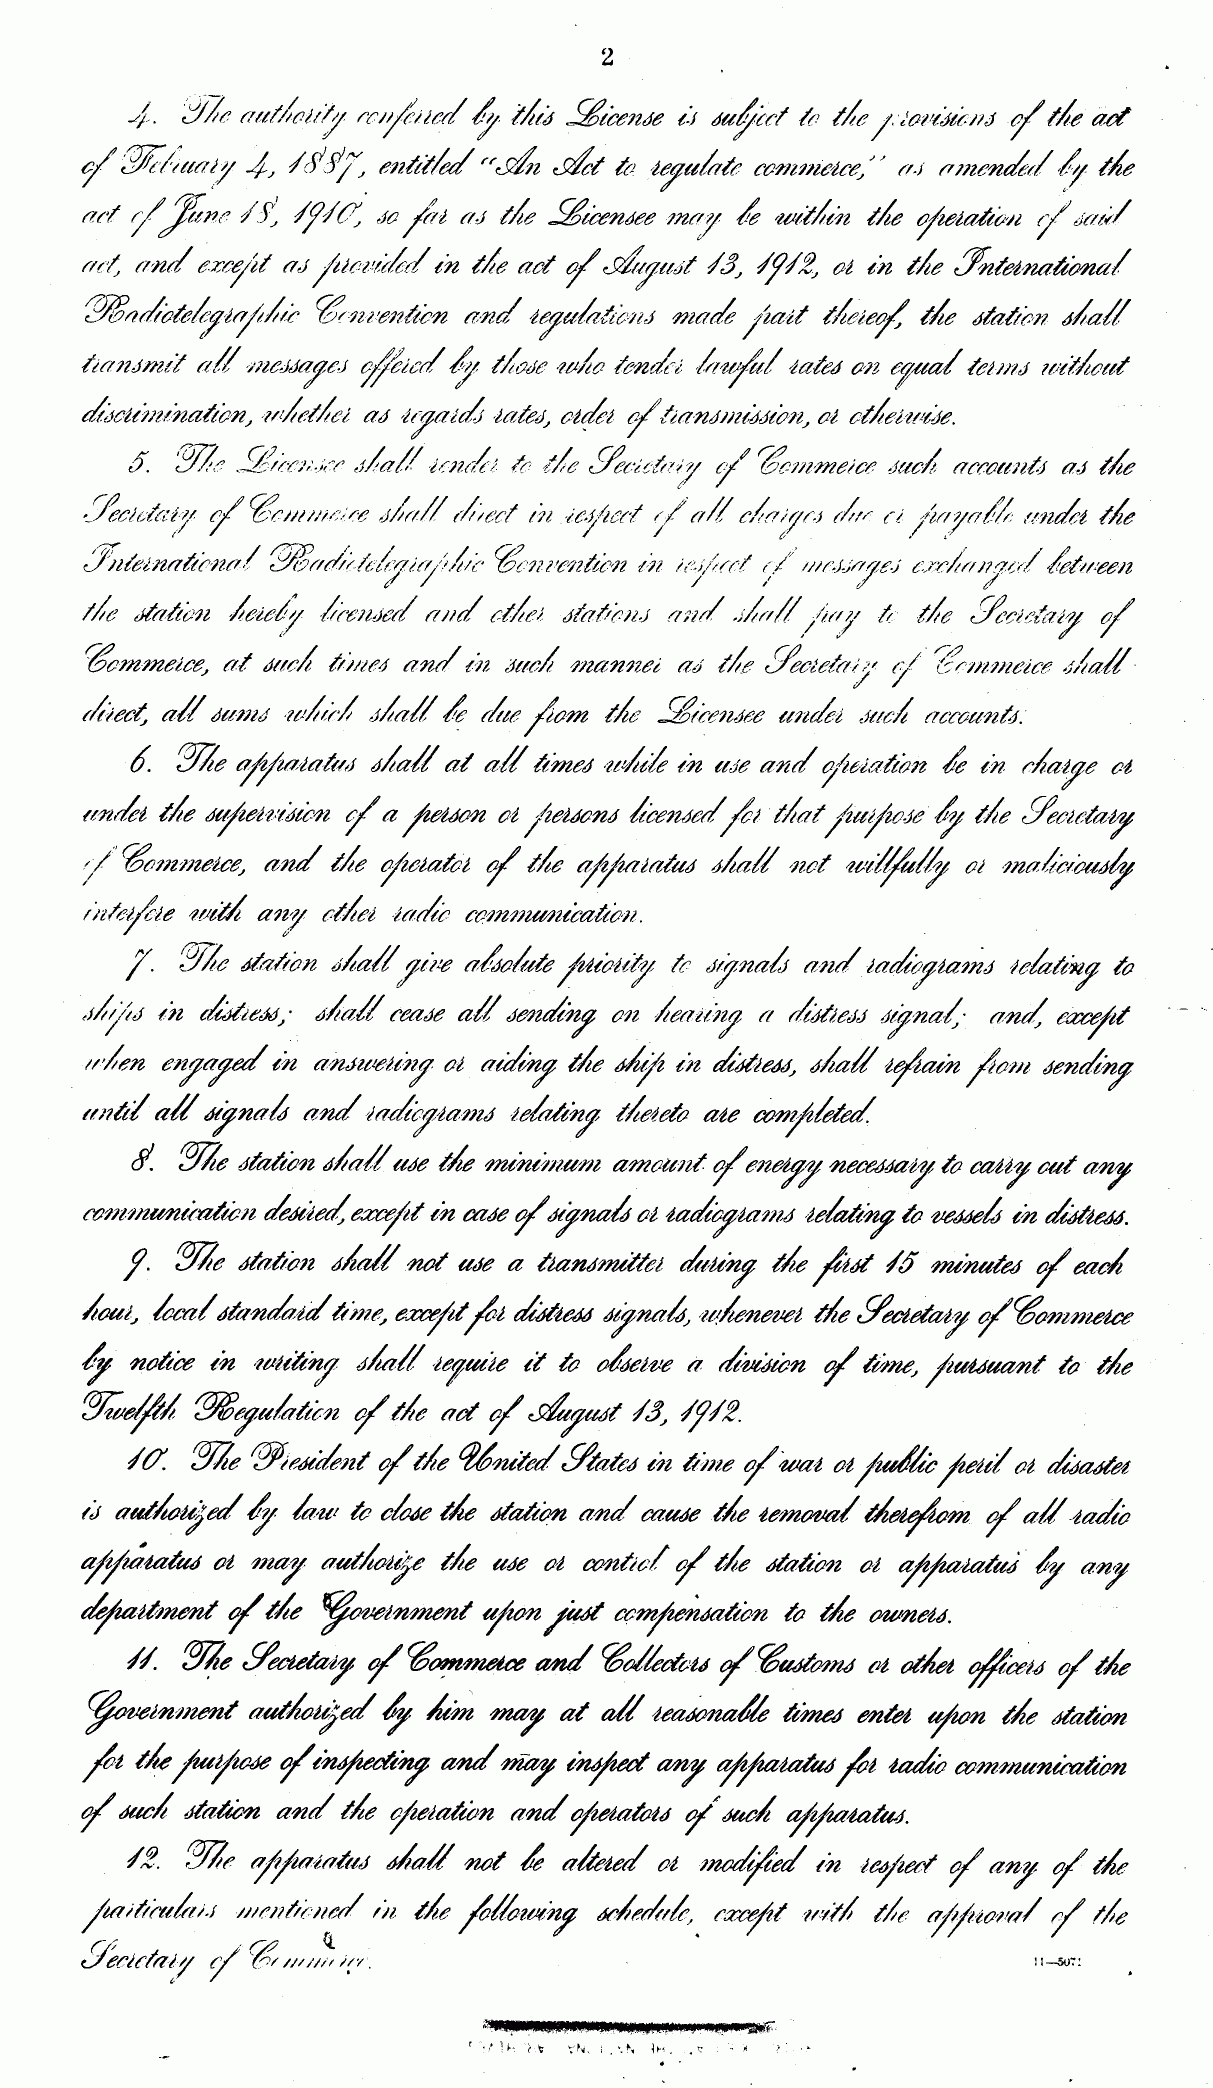 KDKA second licence (November 7, 1921) - 2nd page